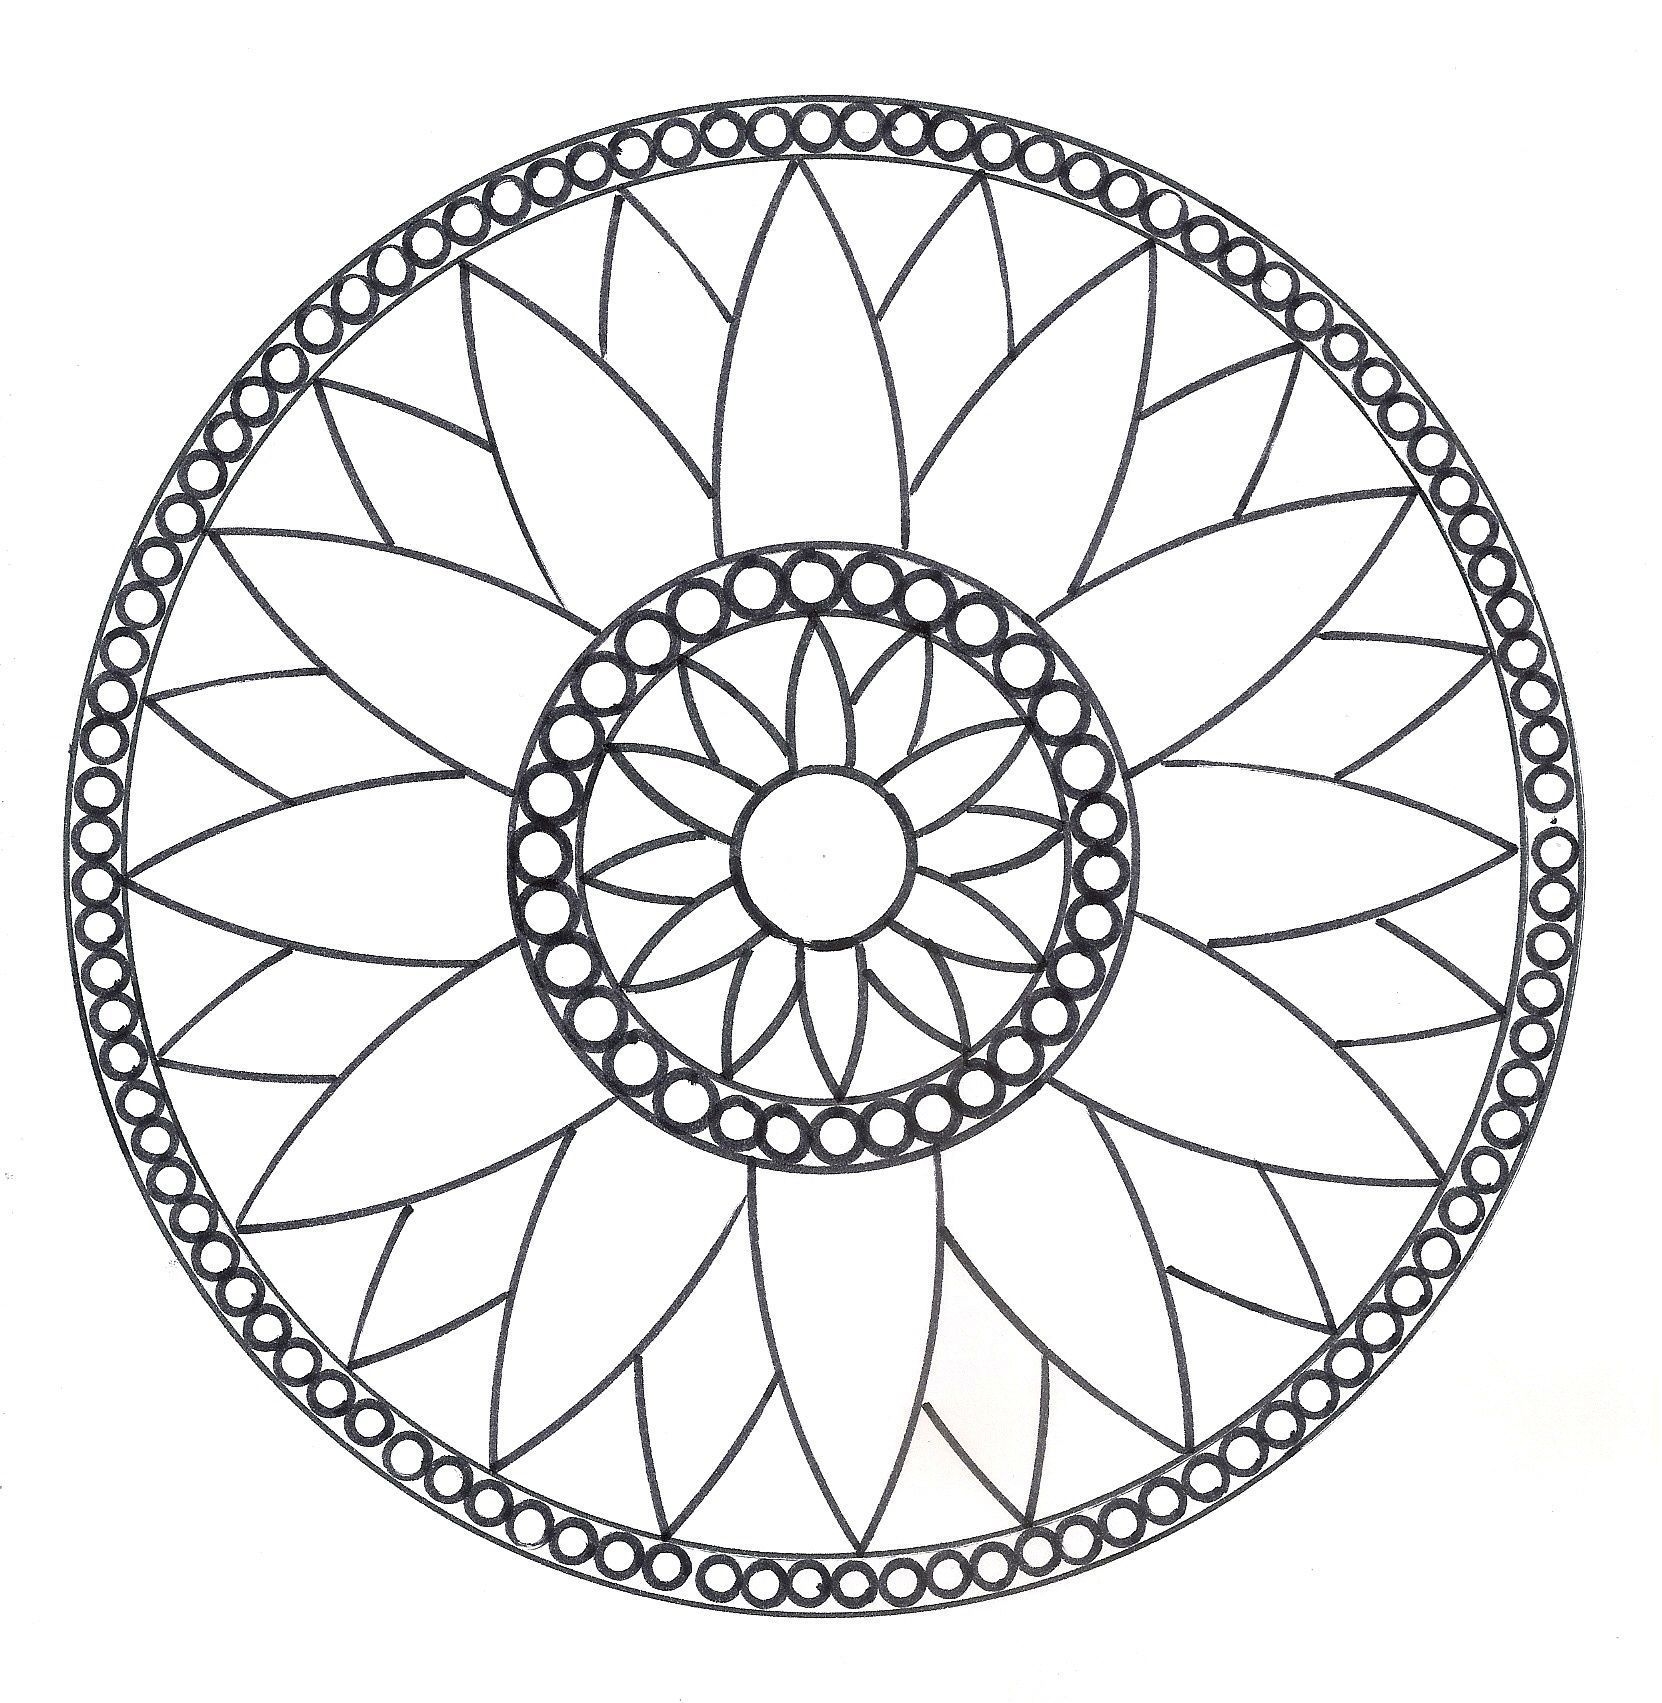 Геометрический орнамент на посуде раскраска